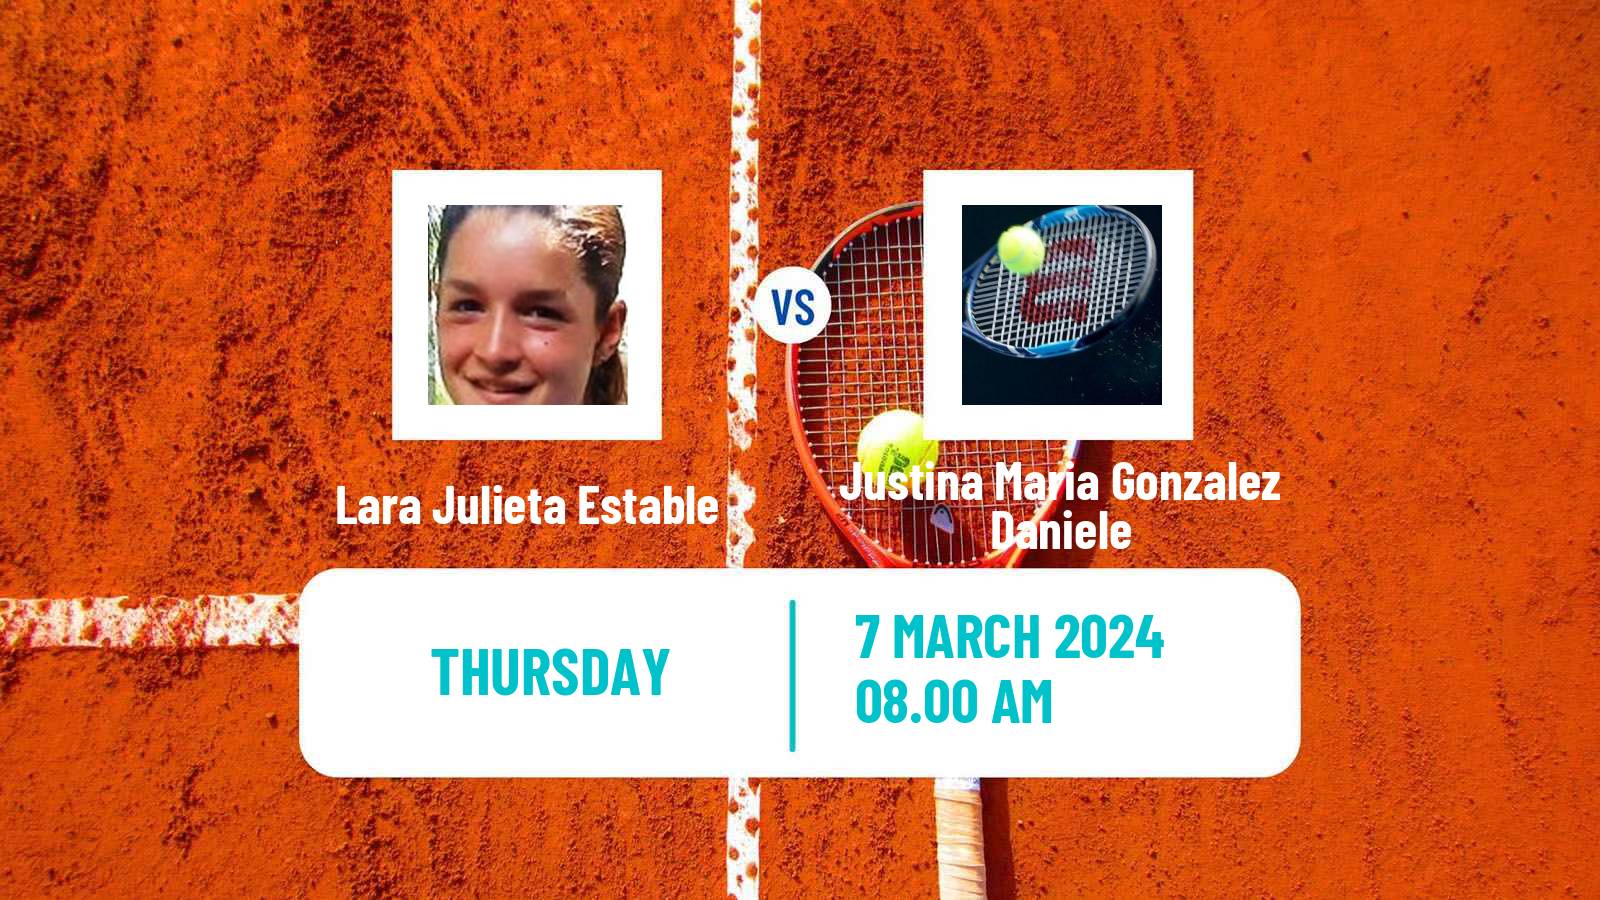 Tennis ITF W15 Cordoba Women Lara Julieta Estable - Justina Maria Gonzalez Daniele